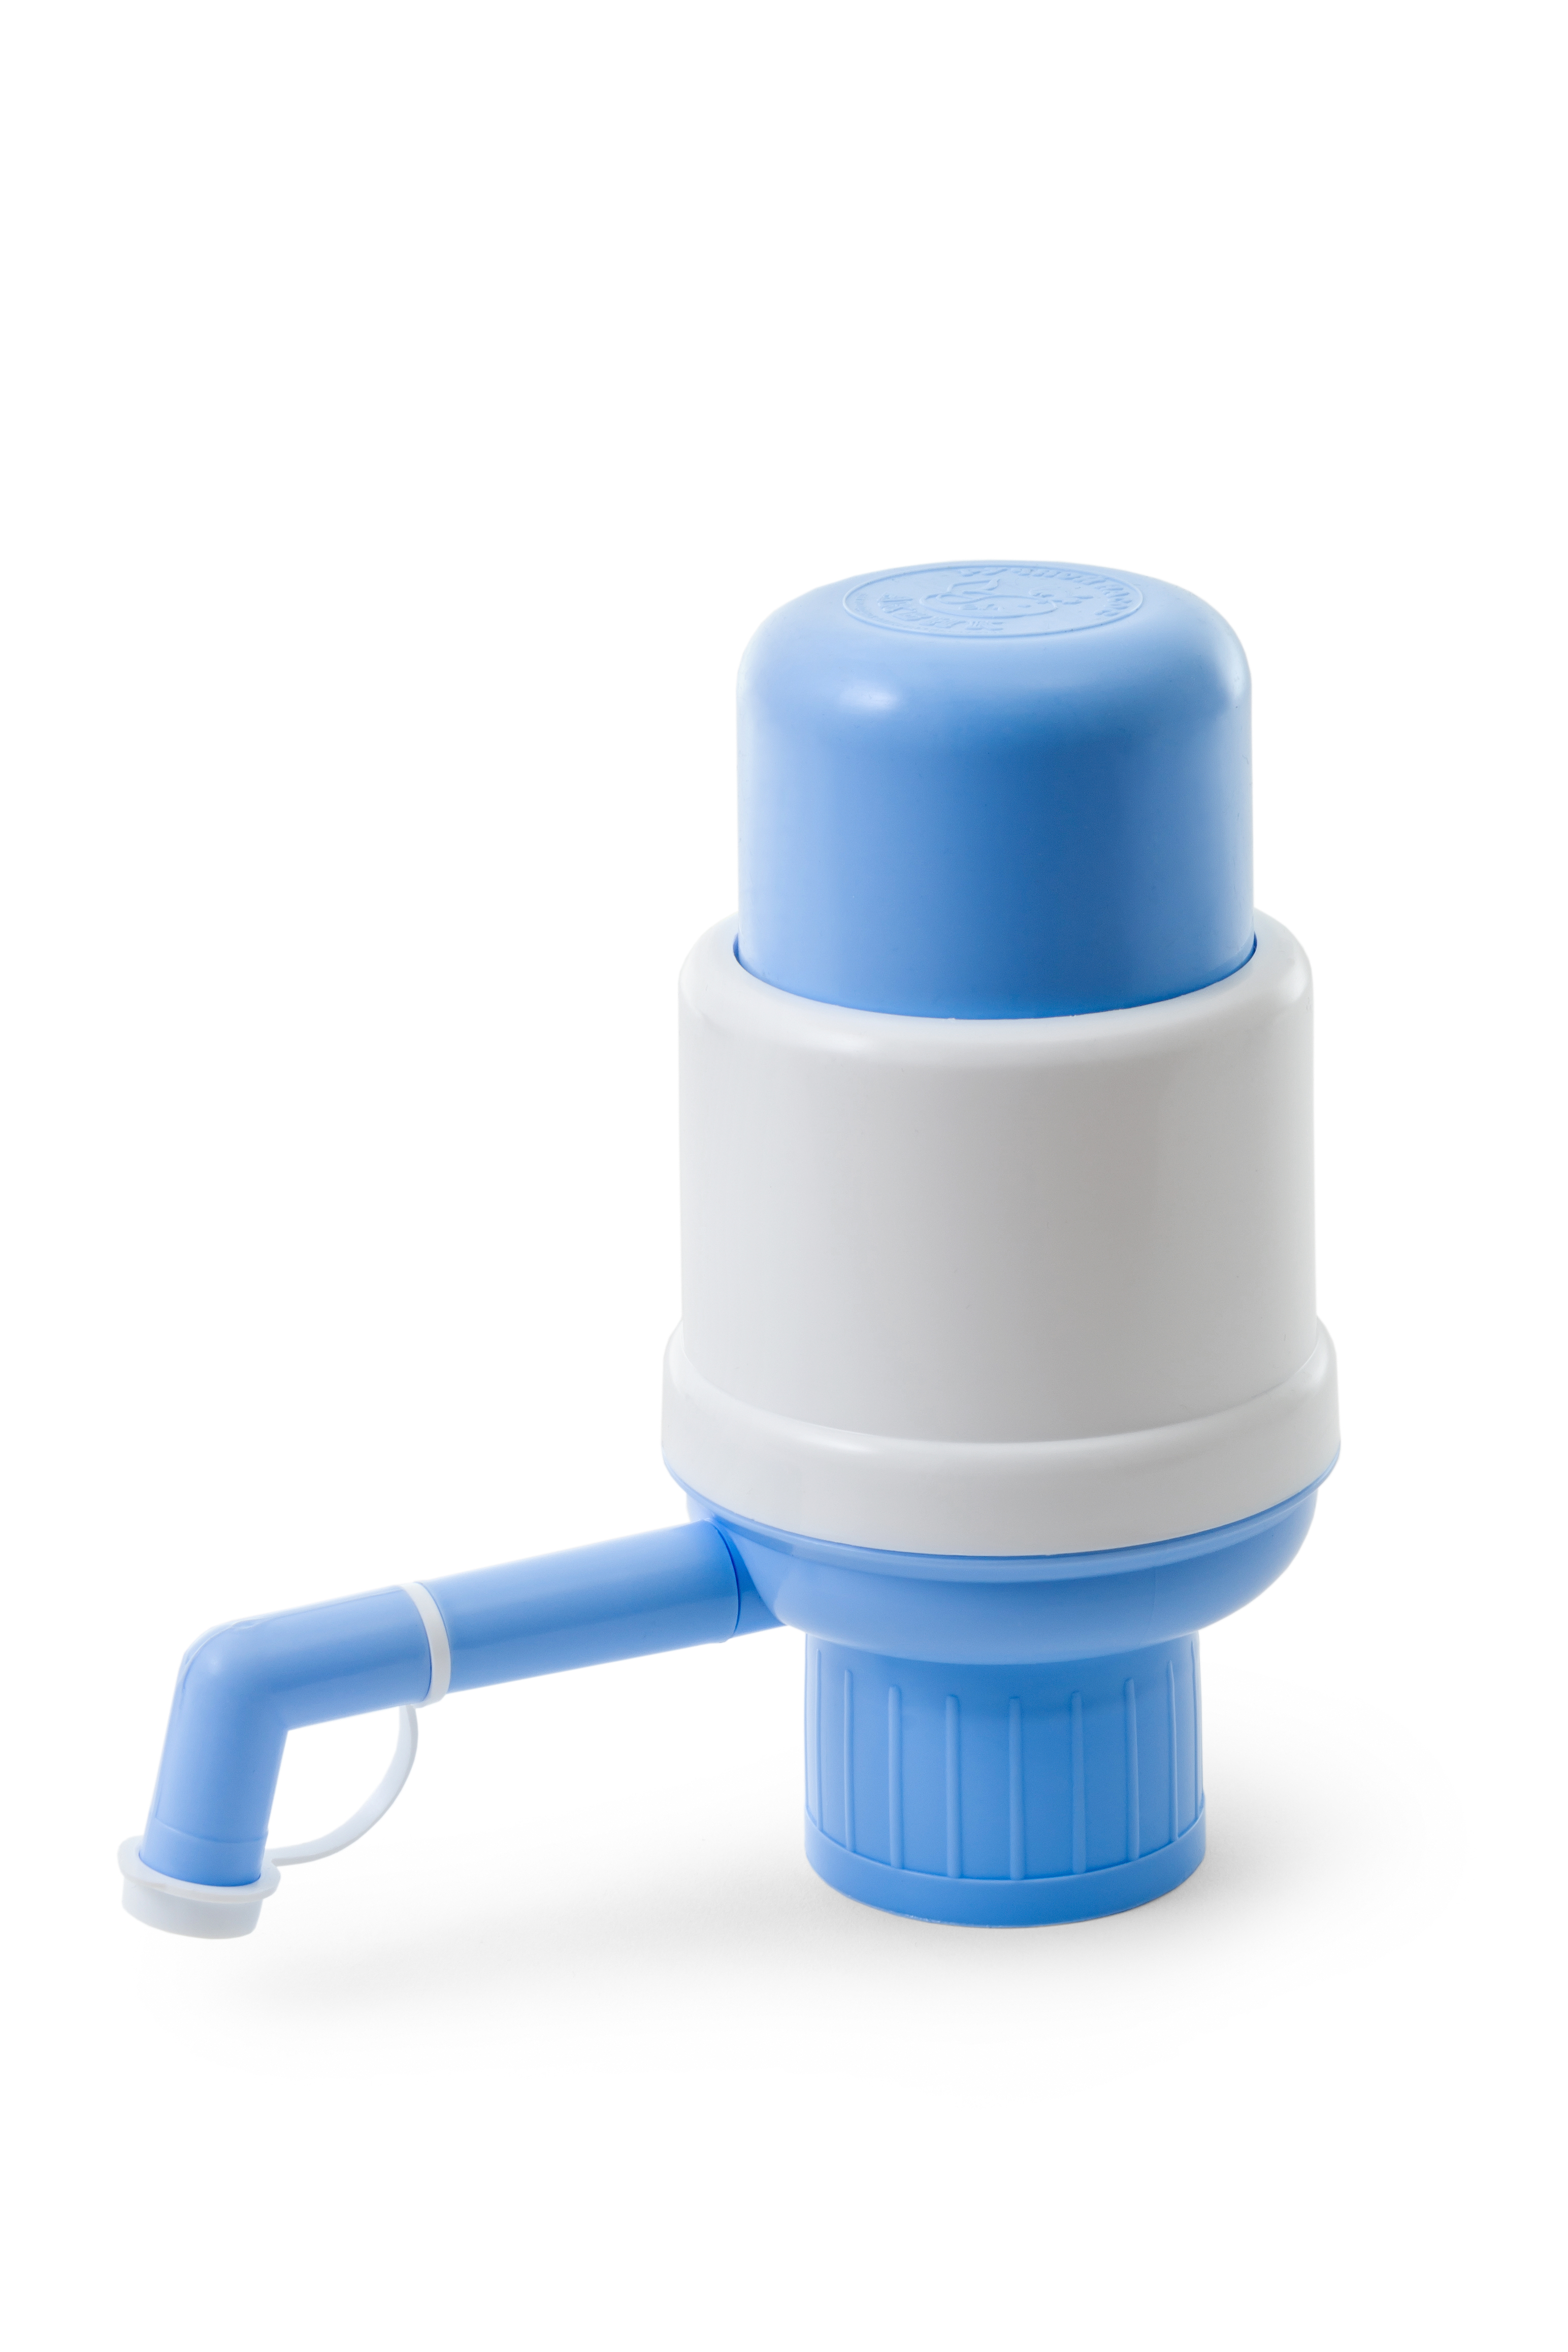 Помпа для воды на бутыль VATTEN №3м, без нагрева / без охлаждения, белый/голубой (4874)